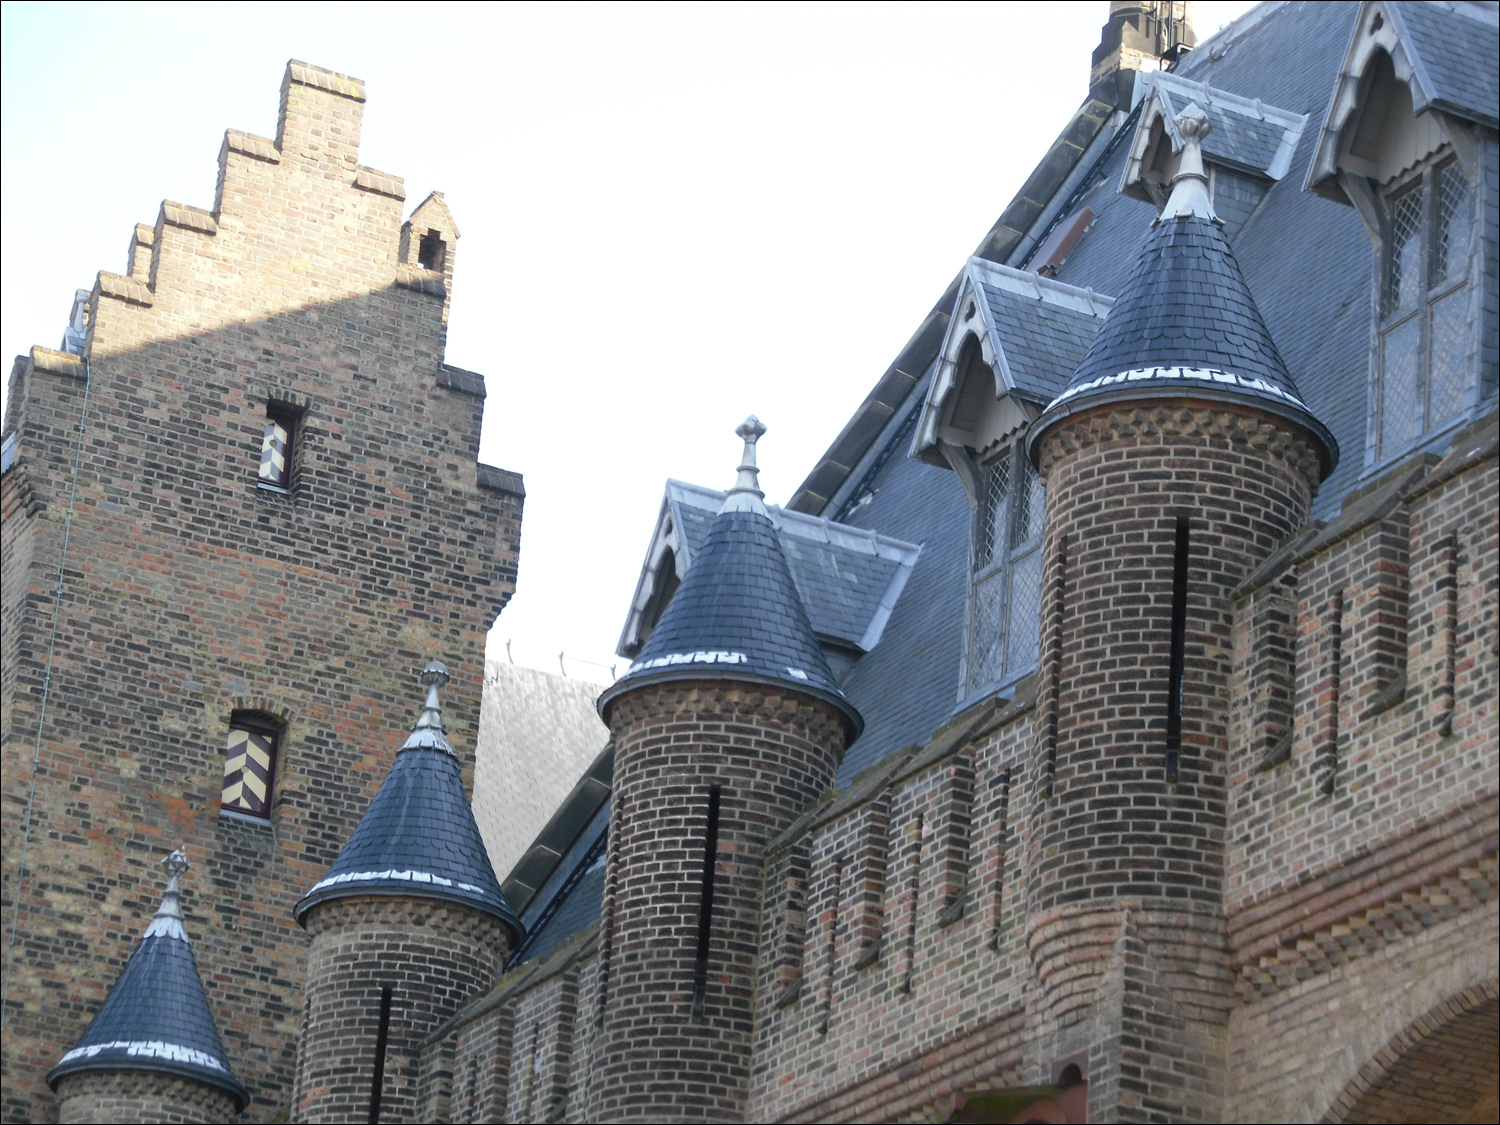 Hague-inside Binnenhof, top of church & adjacent tower